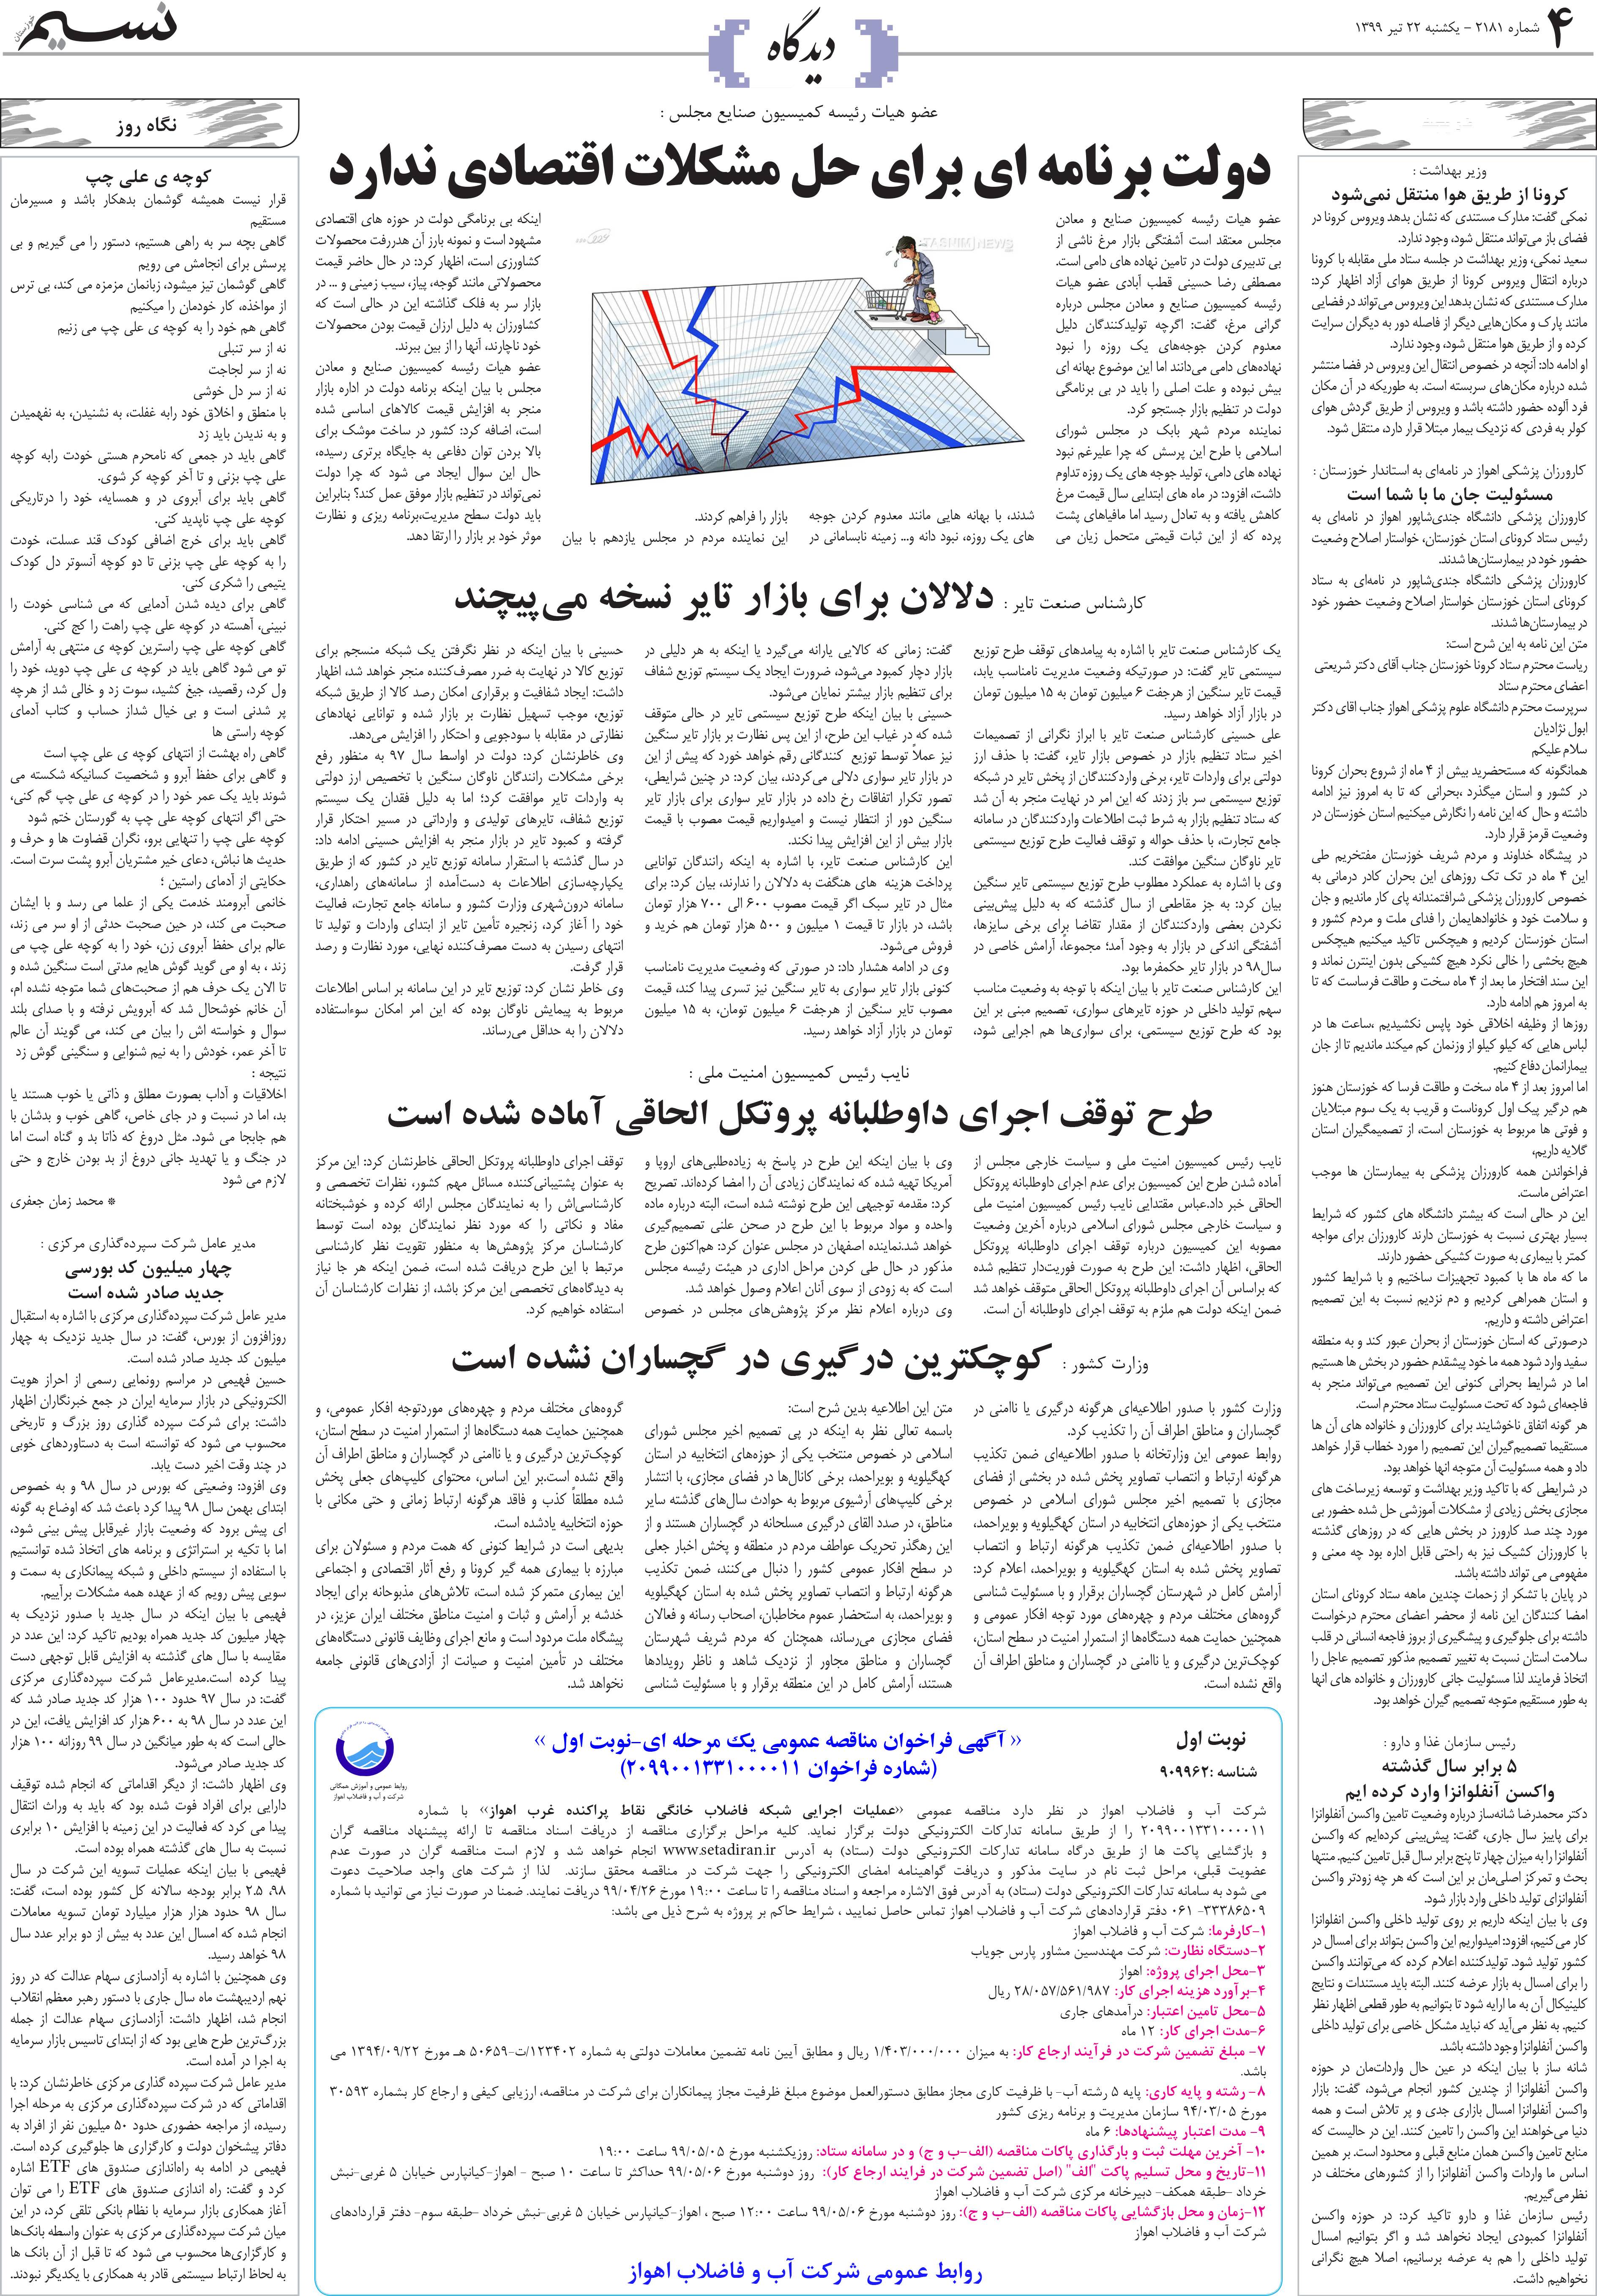 صفحه دیدگاه روزنامه نسیم شماره 2181